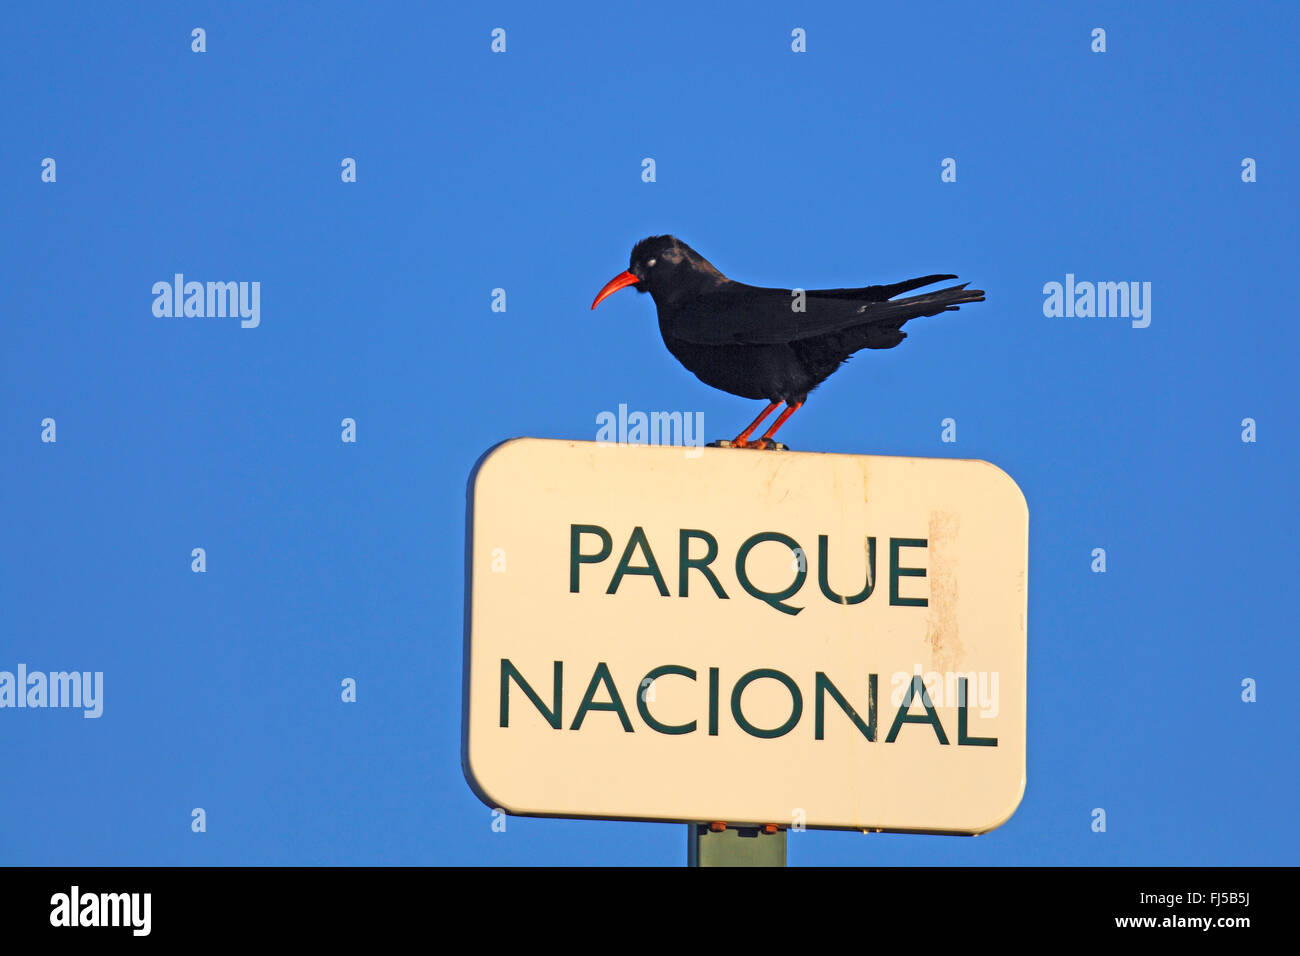 Rosso-fatturate (CHOUGH Pyrrhocorax pyrrhocorax), seduto su un parco nazionale di segno, Isole Canarie La Palma Foto Stock